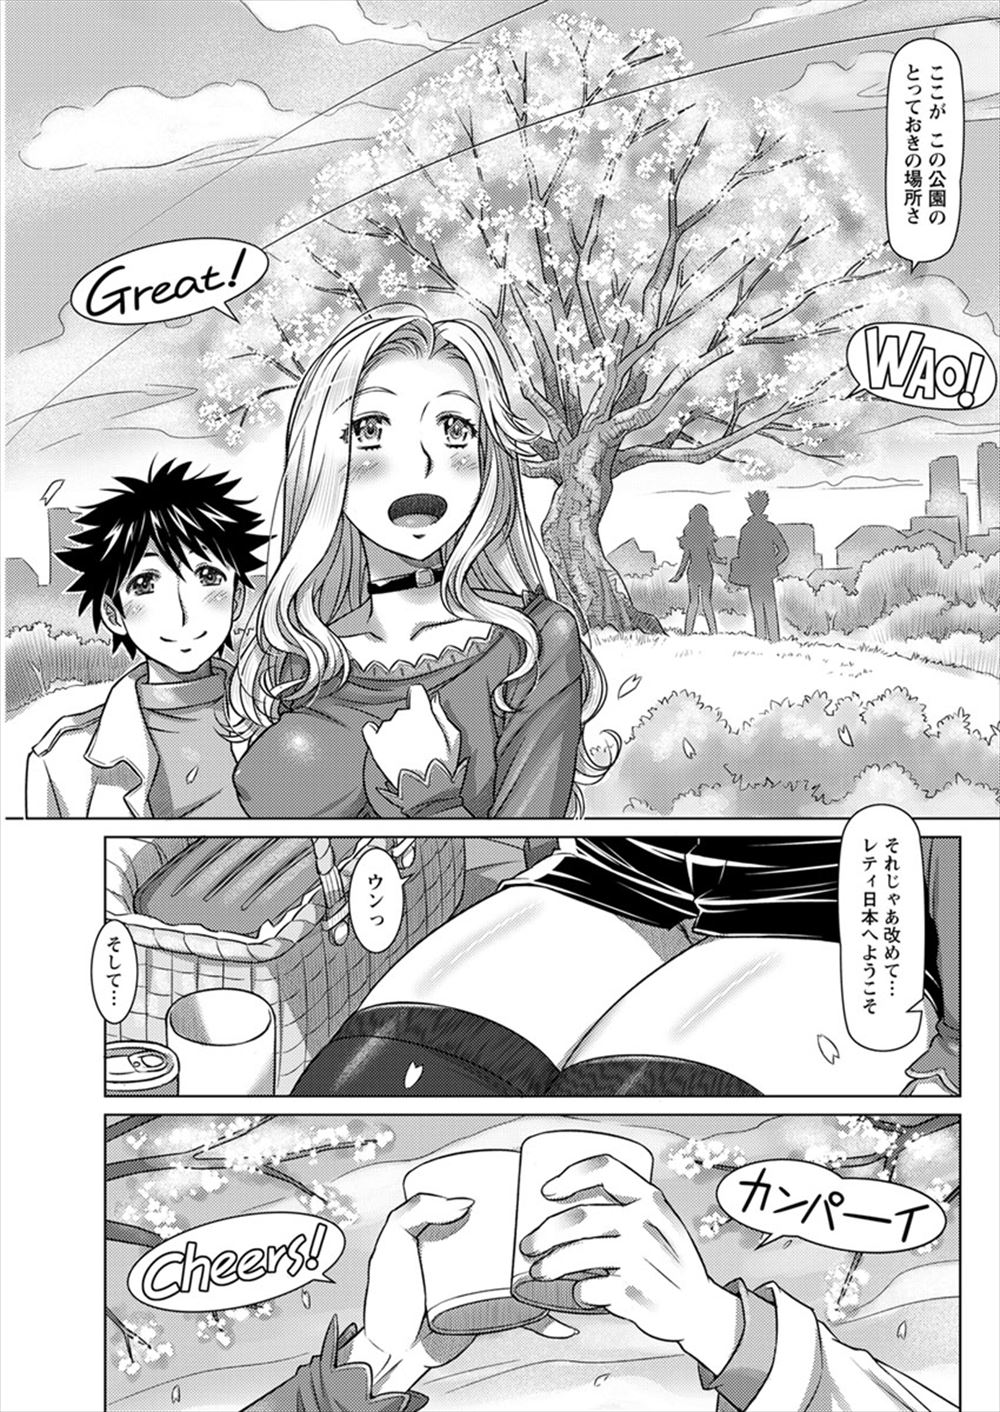 【エロ漫画】大学時代にホームステイした家の金髪美少女に告白できないまま帰国した男が、その五年後彼女が日本に留学してきて再会し、彼女から花見中に告白され桜の樹の下で何度も中出しセックスした♡